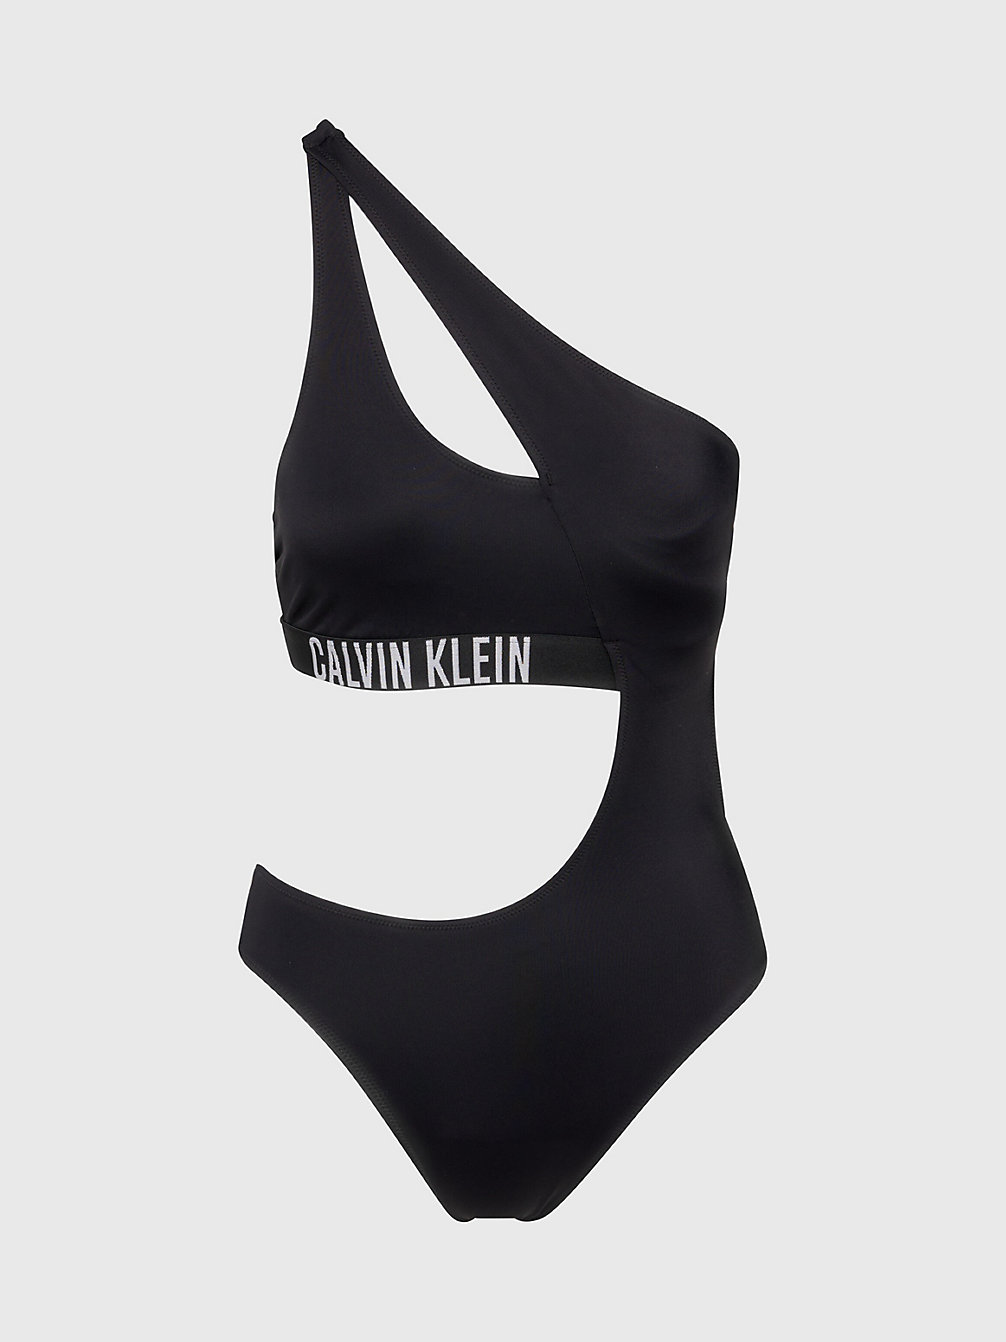 PVH BLACK > Strój Kąpielowy Z Wycięciem - Intense Power > undefined Kobiety - Calvin Klein